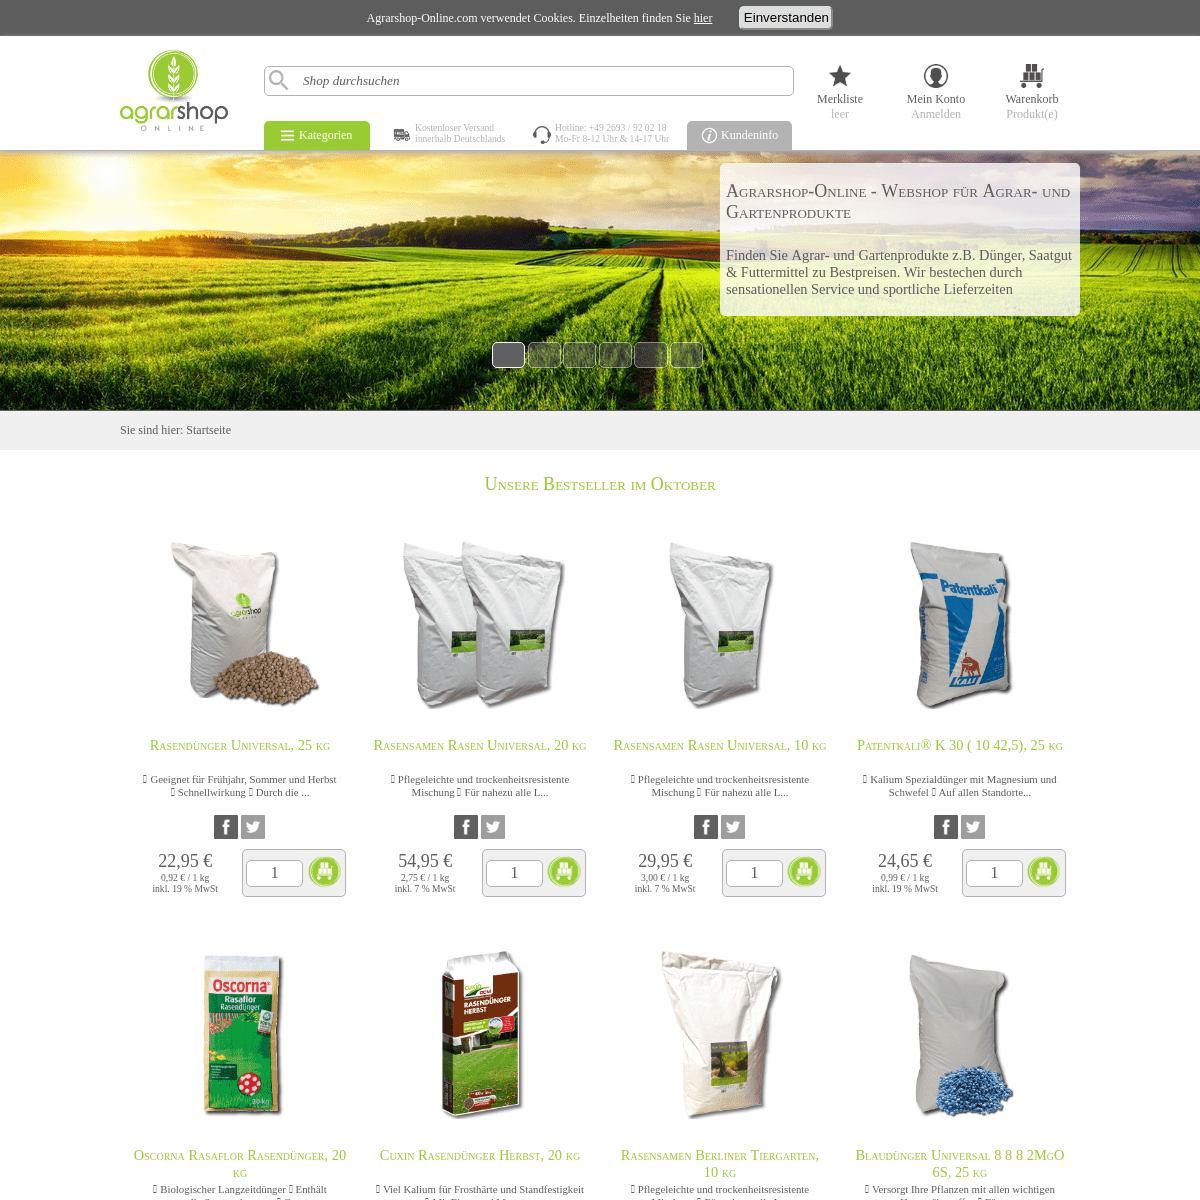 A complete backup of agrarshop-online.de